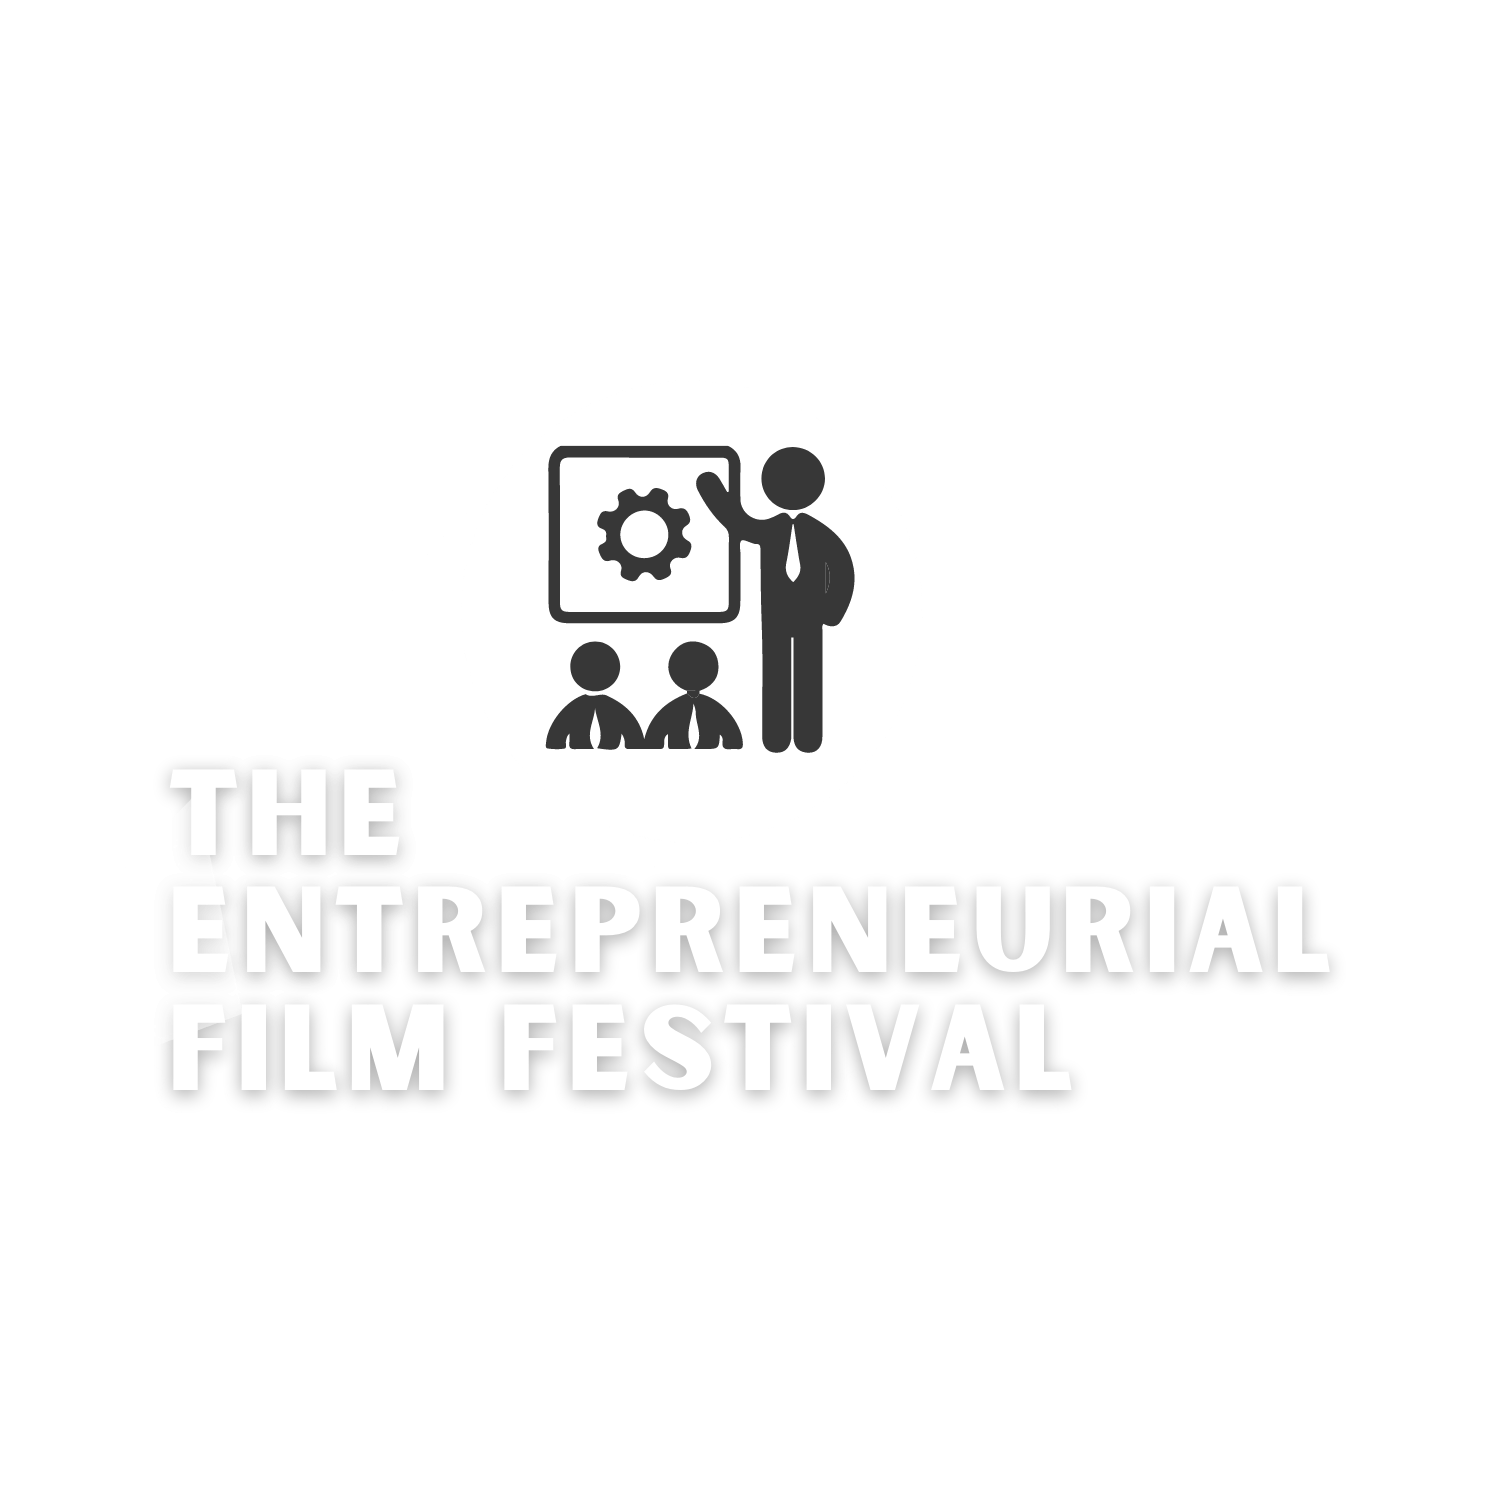 The Entrepreneurship Film Festival